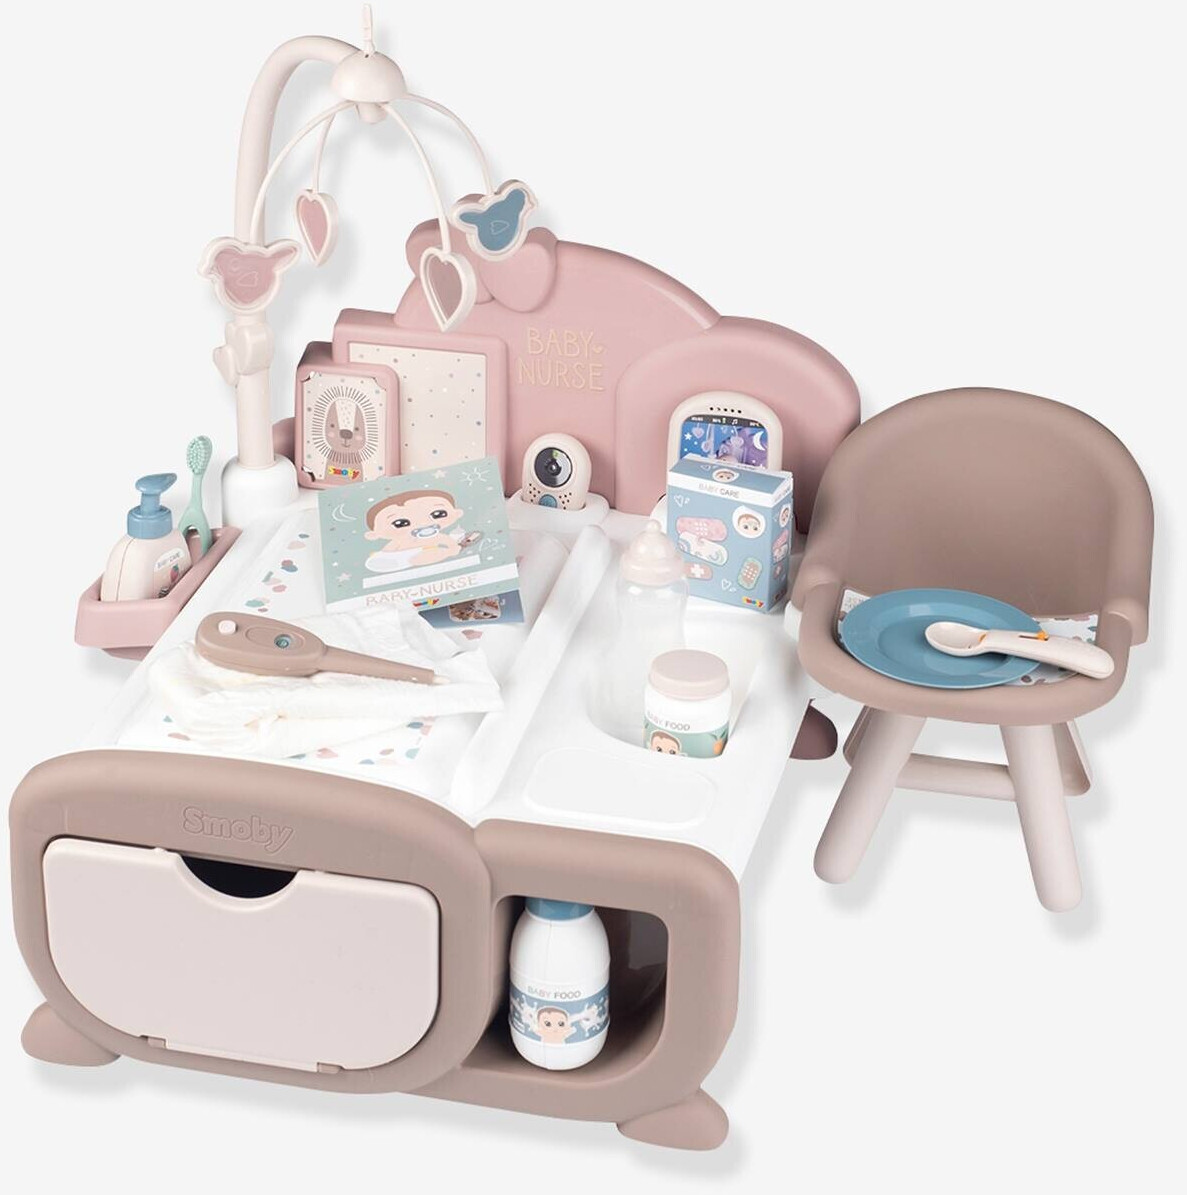 Smoby Puppen-Babyzimmer Baby Nurse ab € 44,99 | Preisvergleich bei